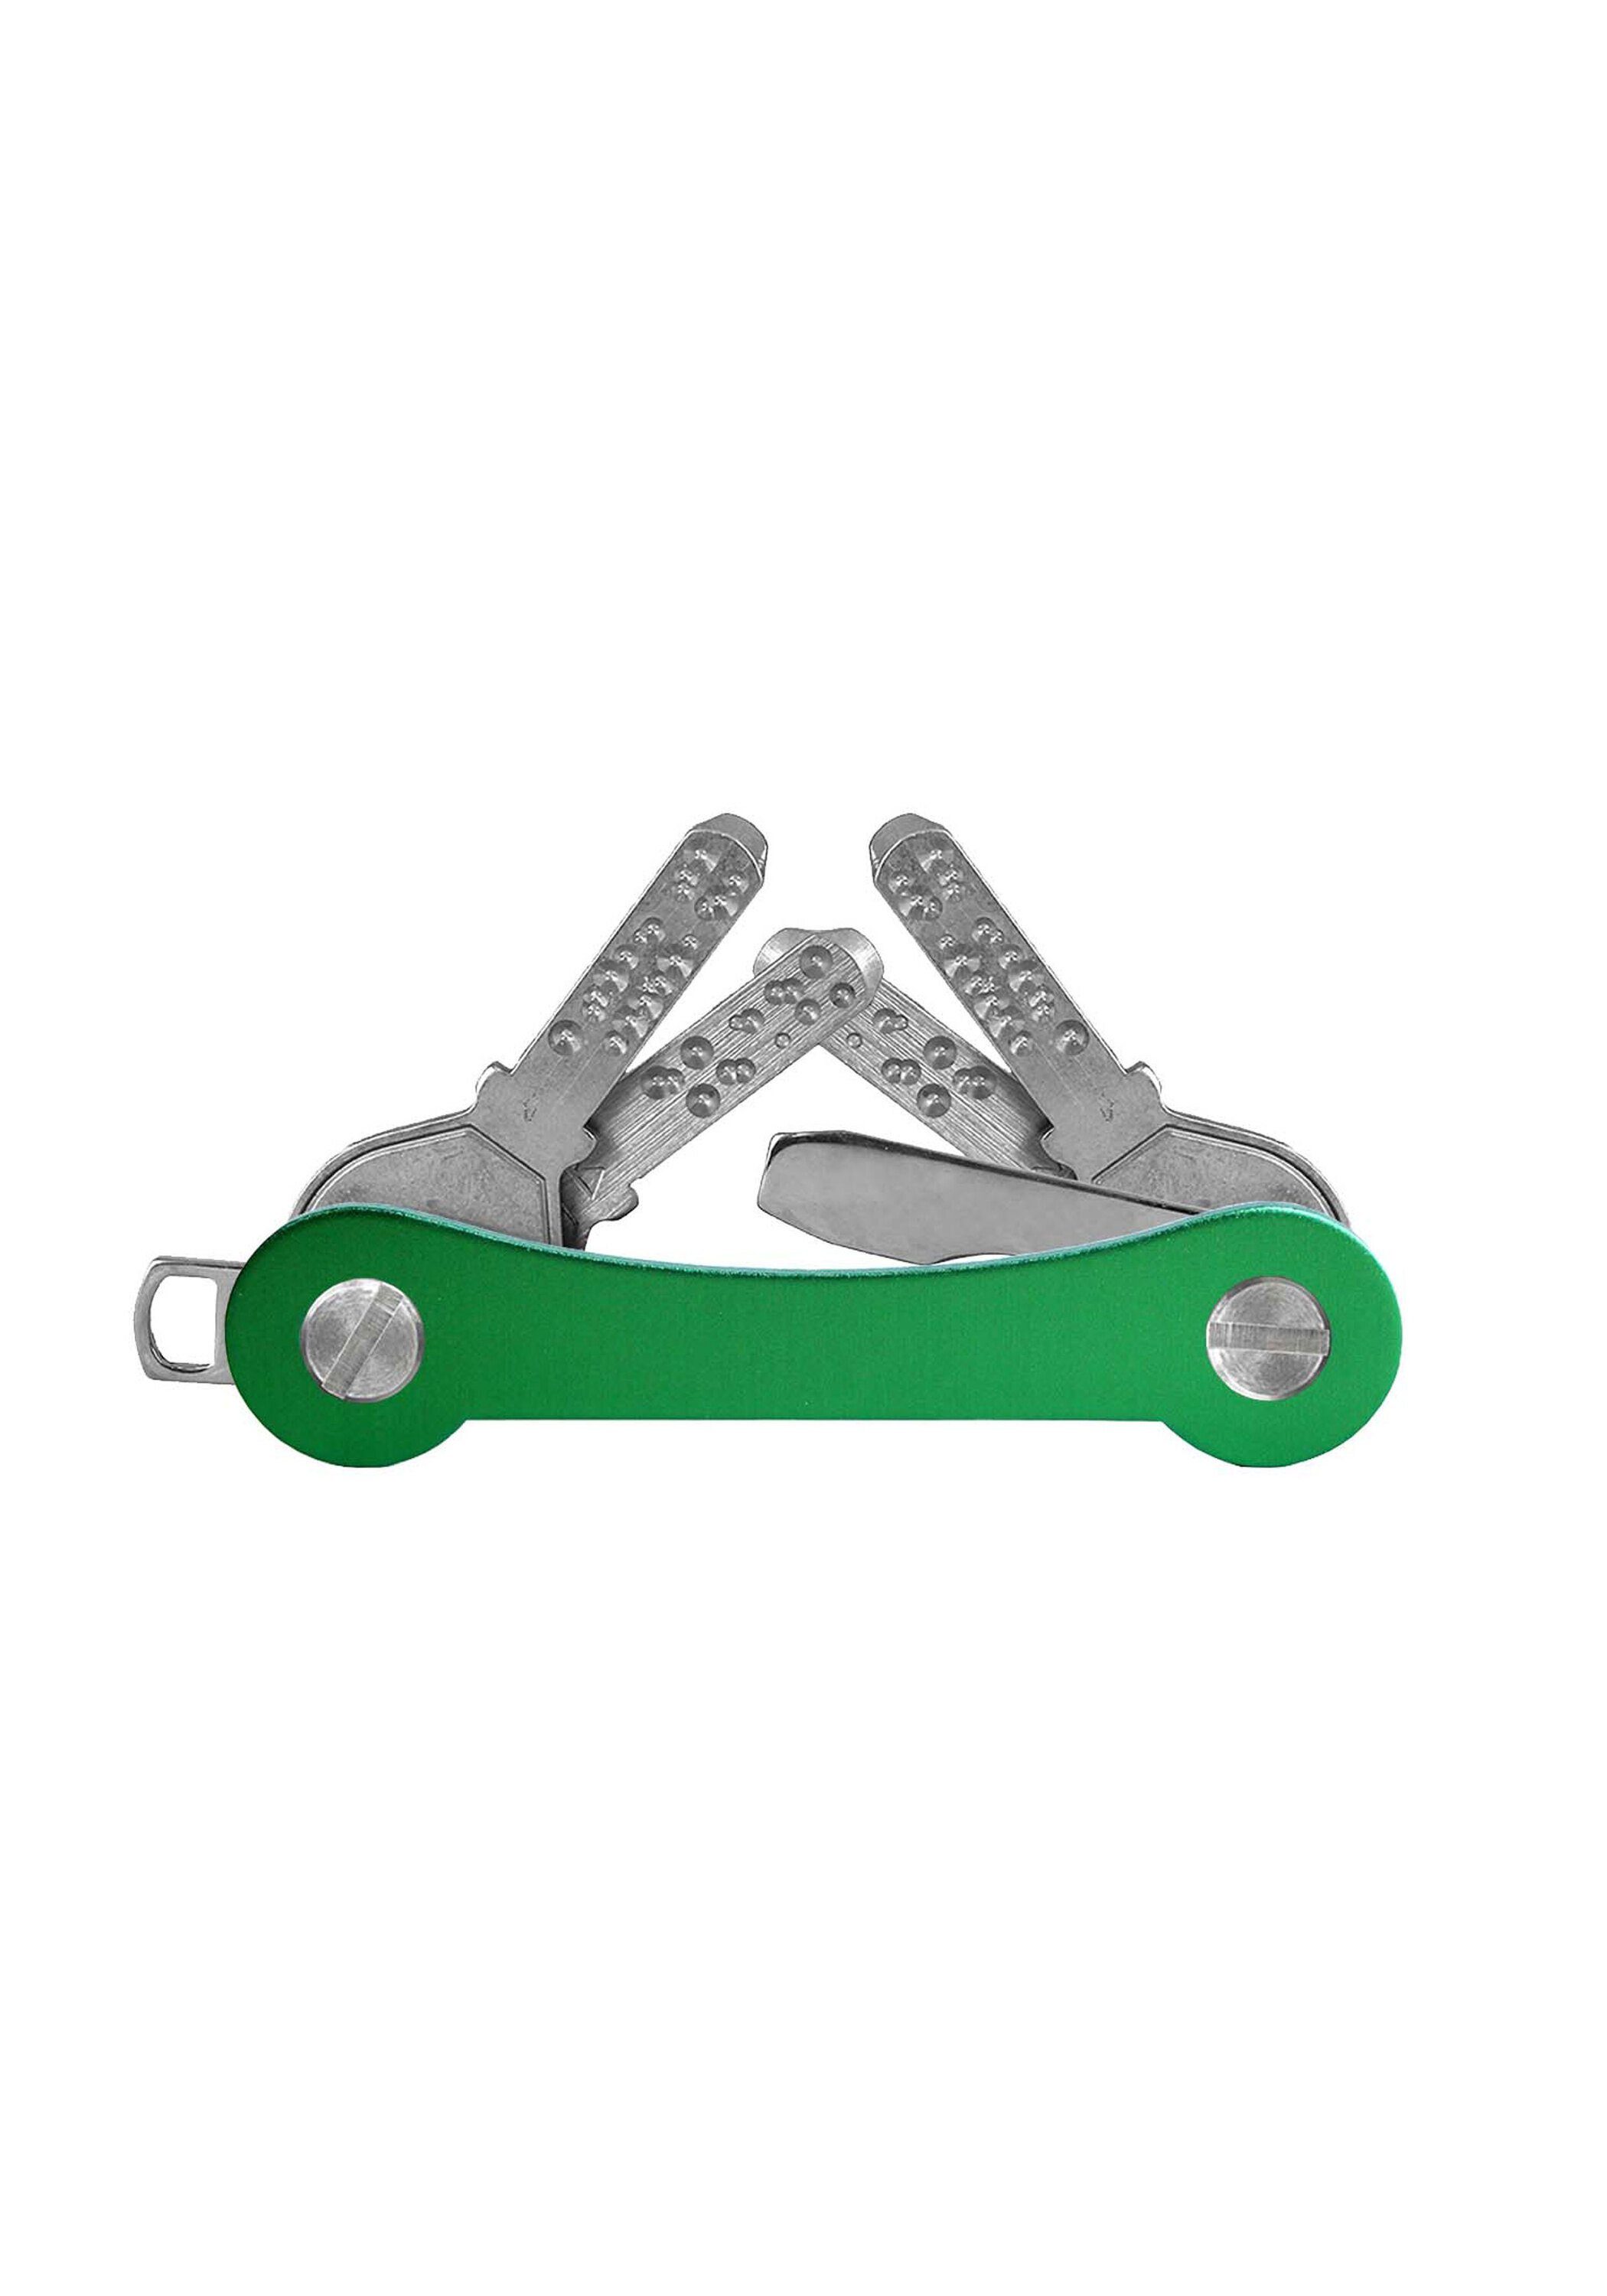 Aluminium, keycabins made SWISS grün Schlüsselanhänger